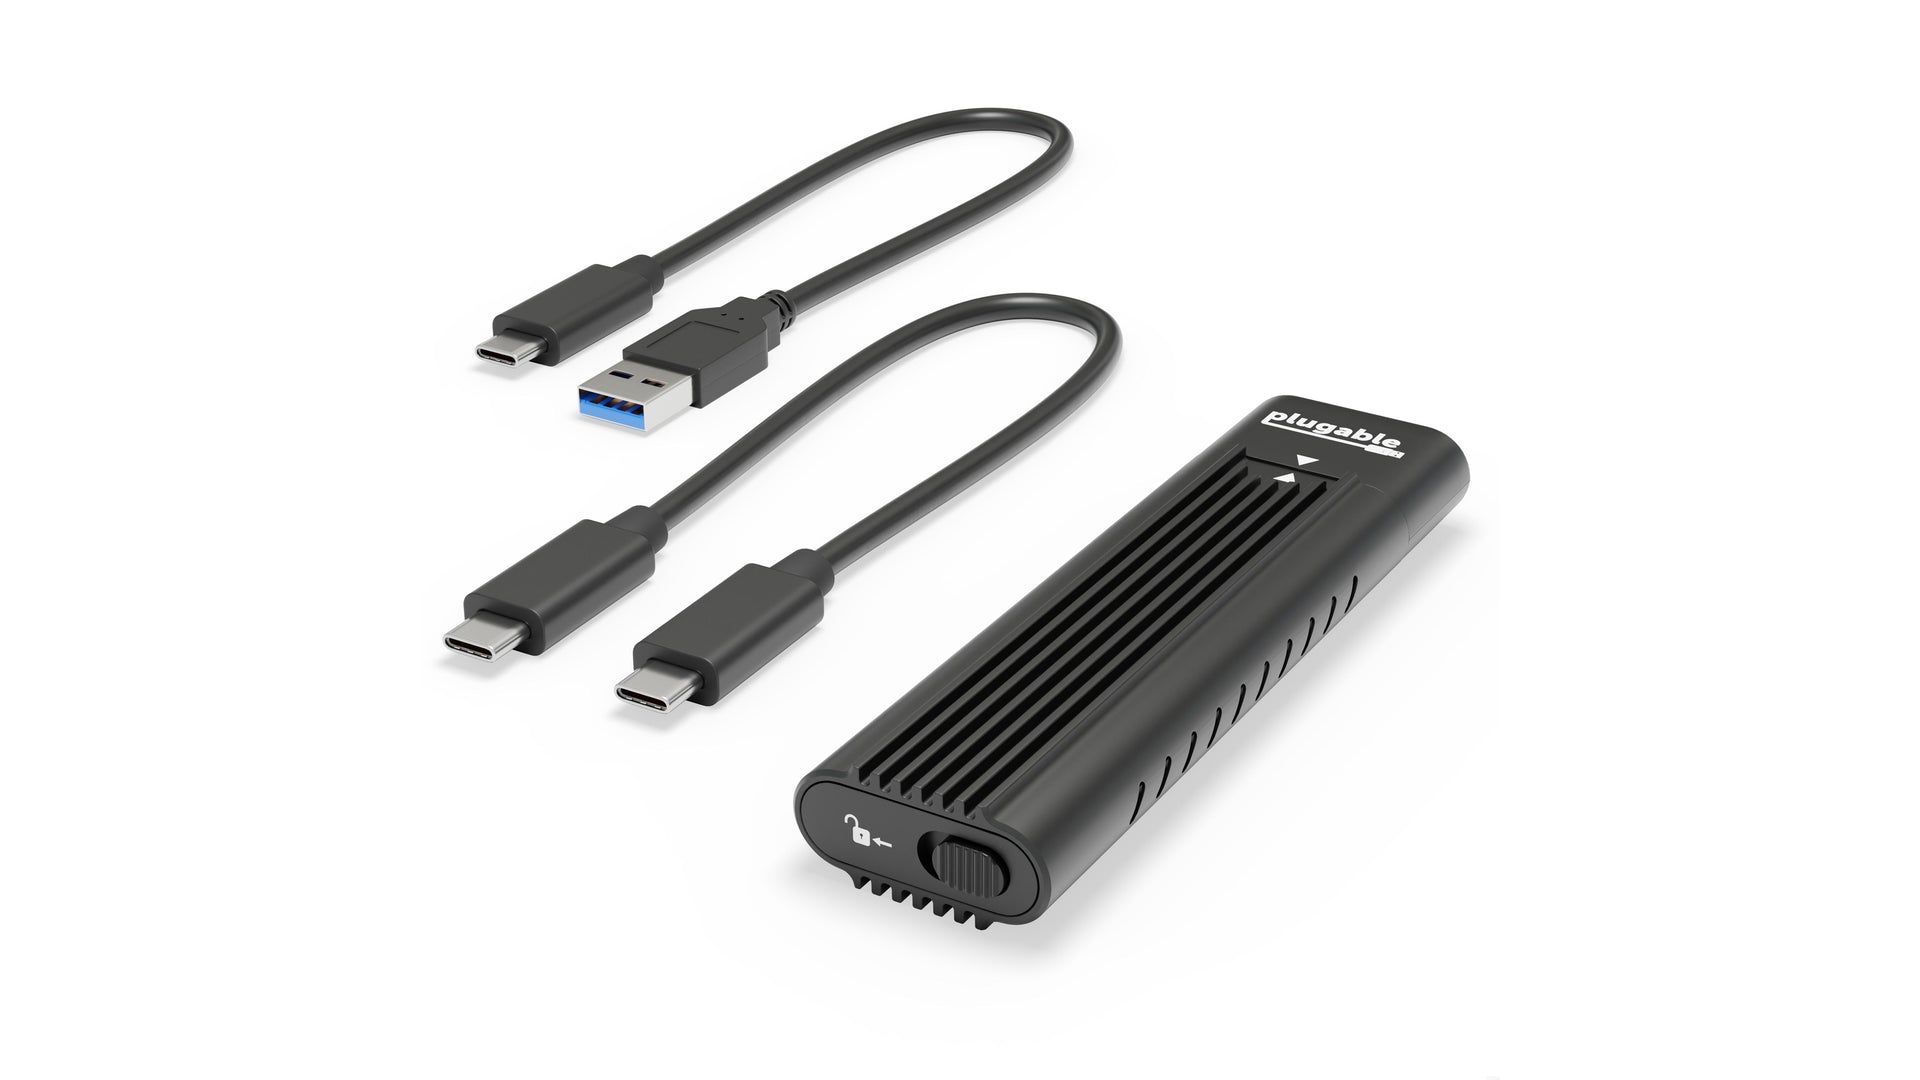 USB-C M.2 SATA and NVMe SSD Enclosure